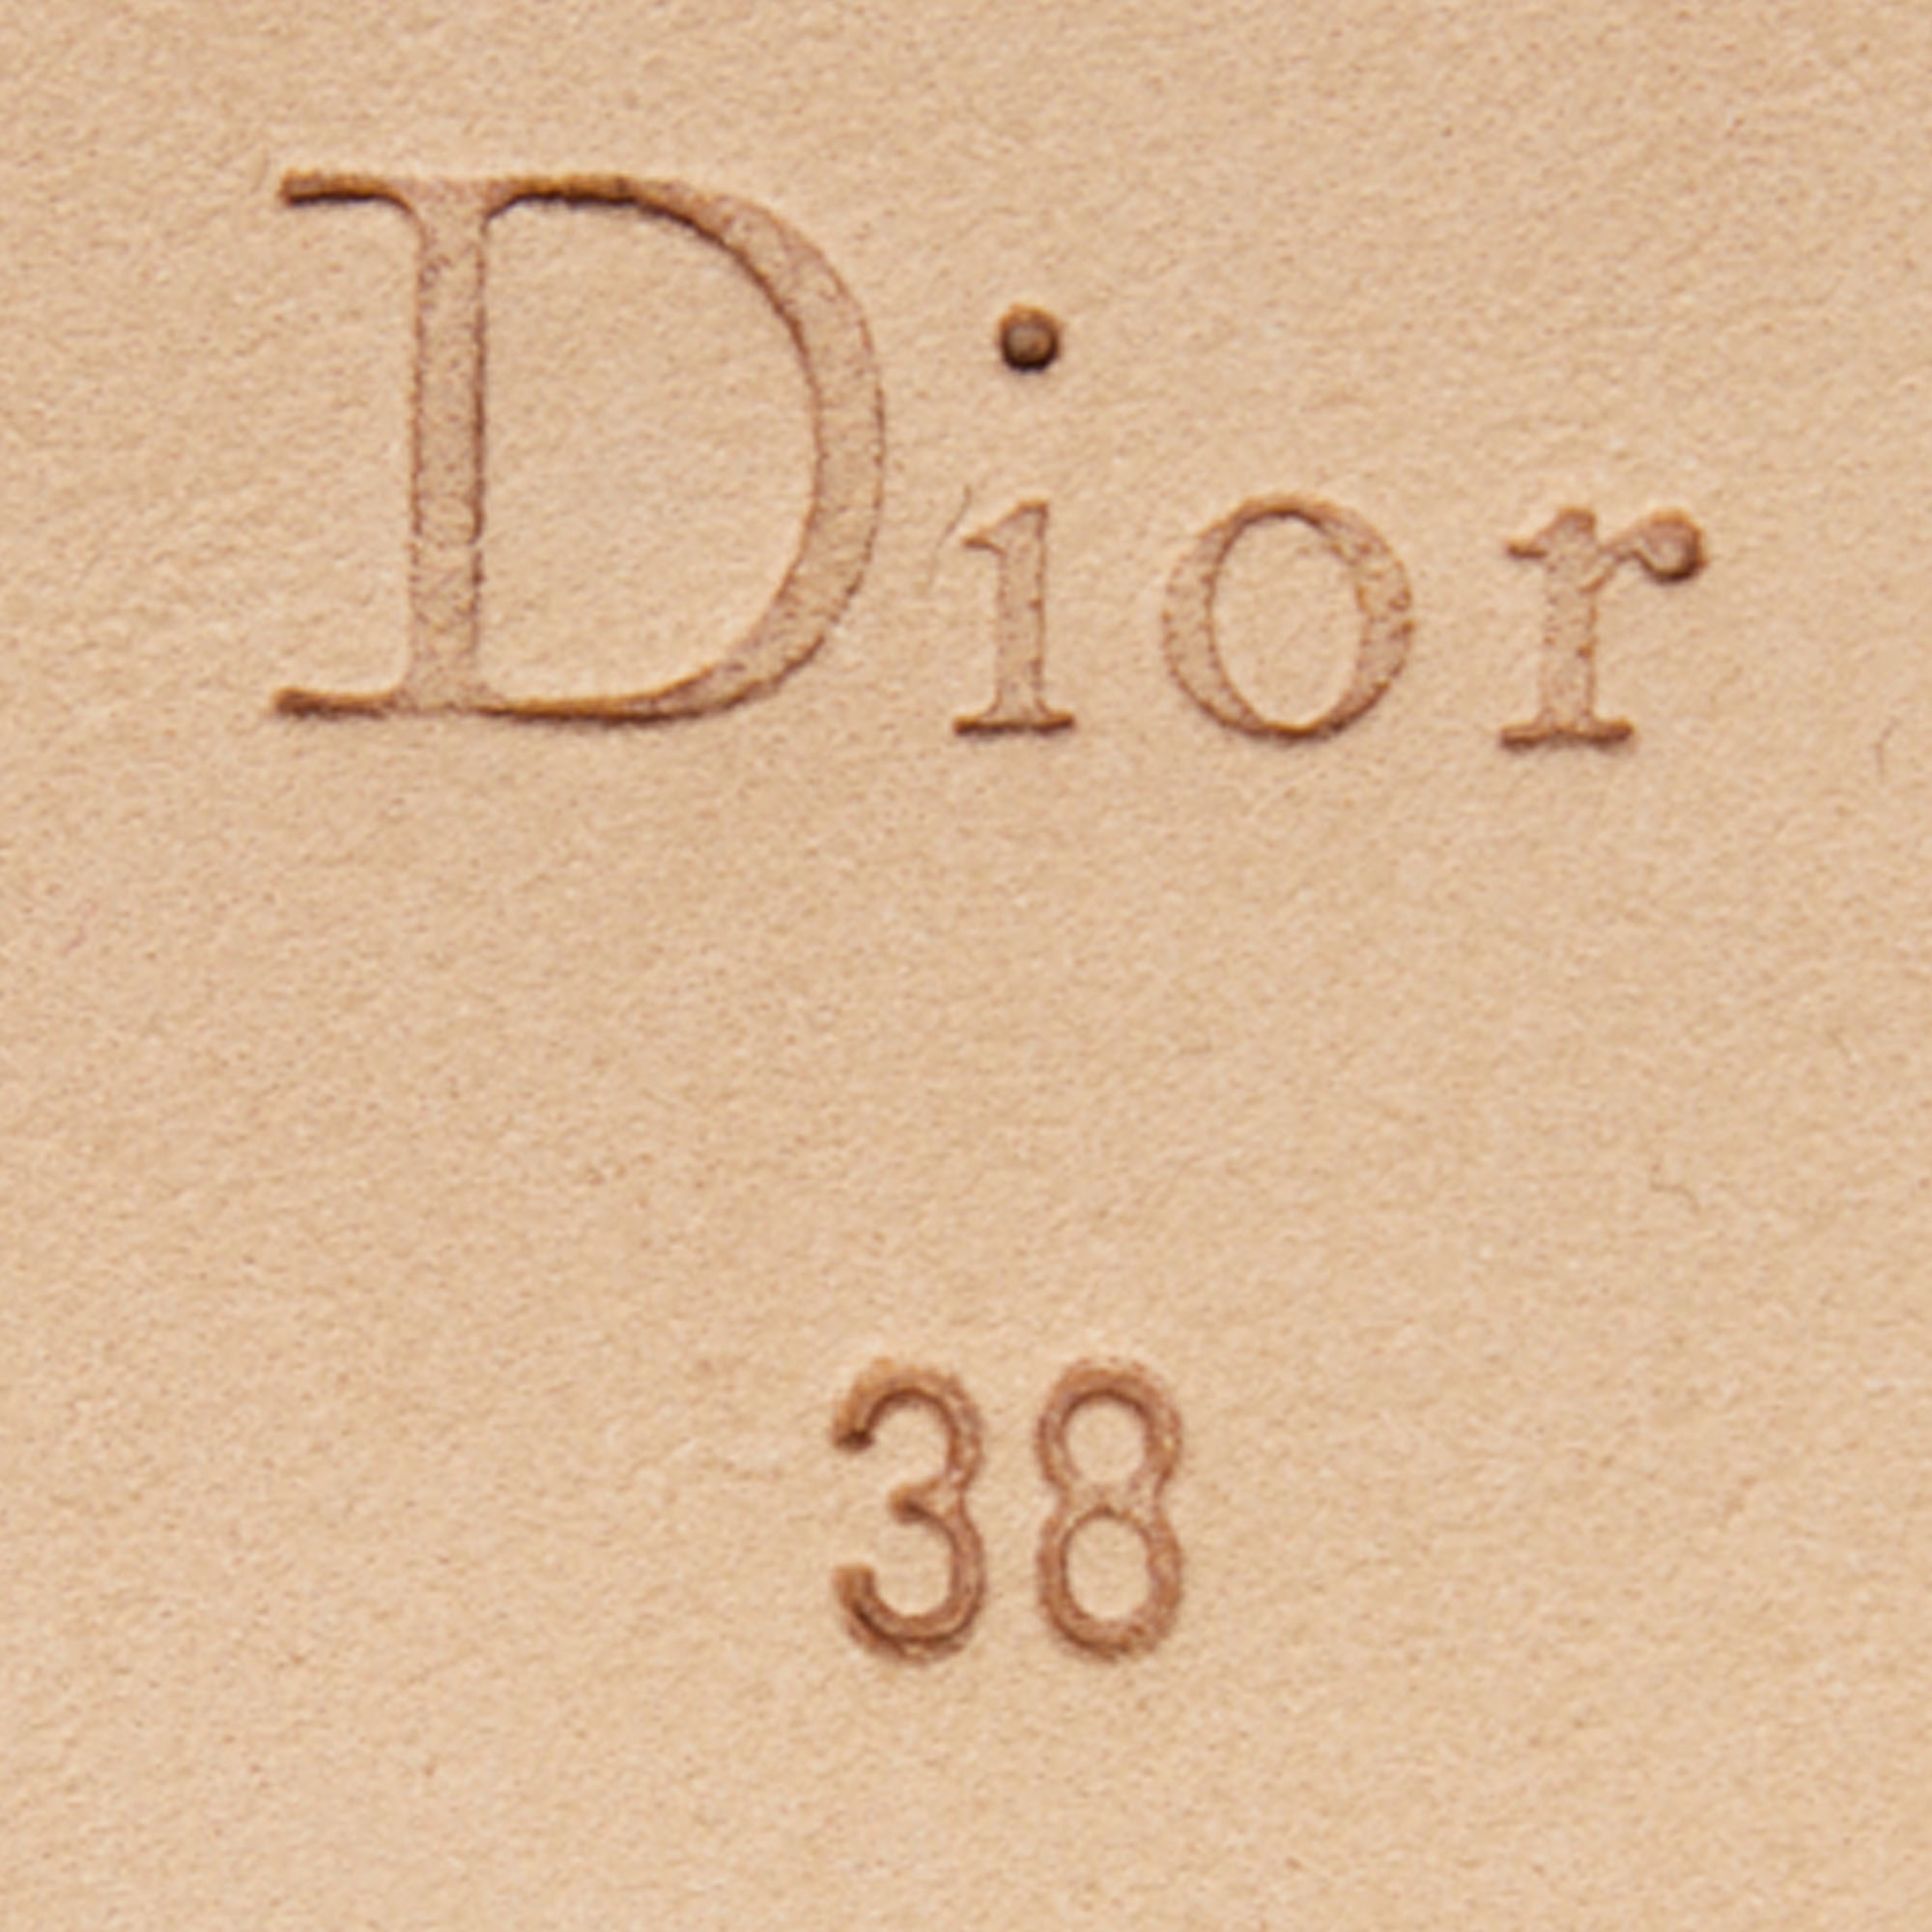 Dior Purple Python Leather T-Strap Platform Pumps Size 38